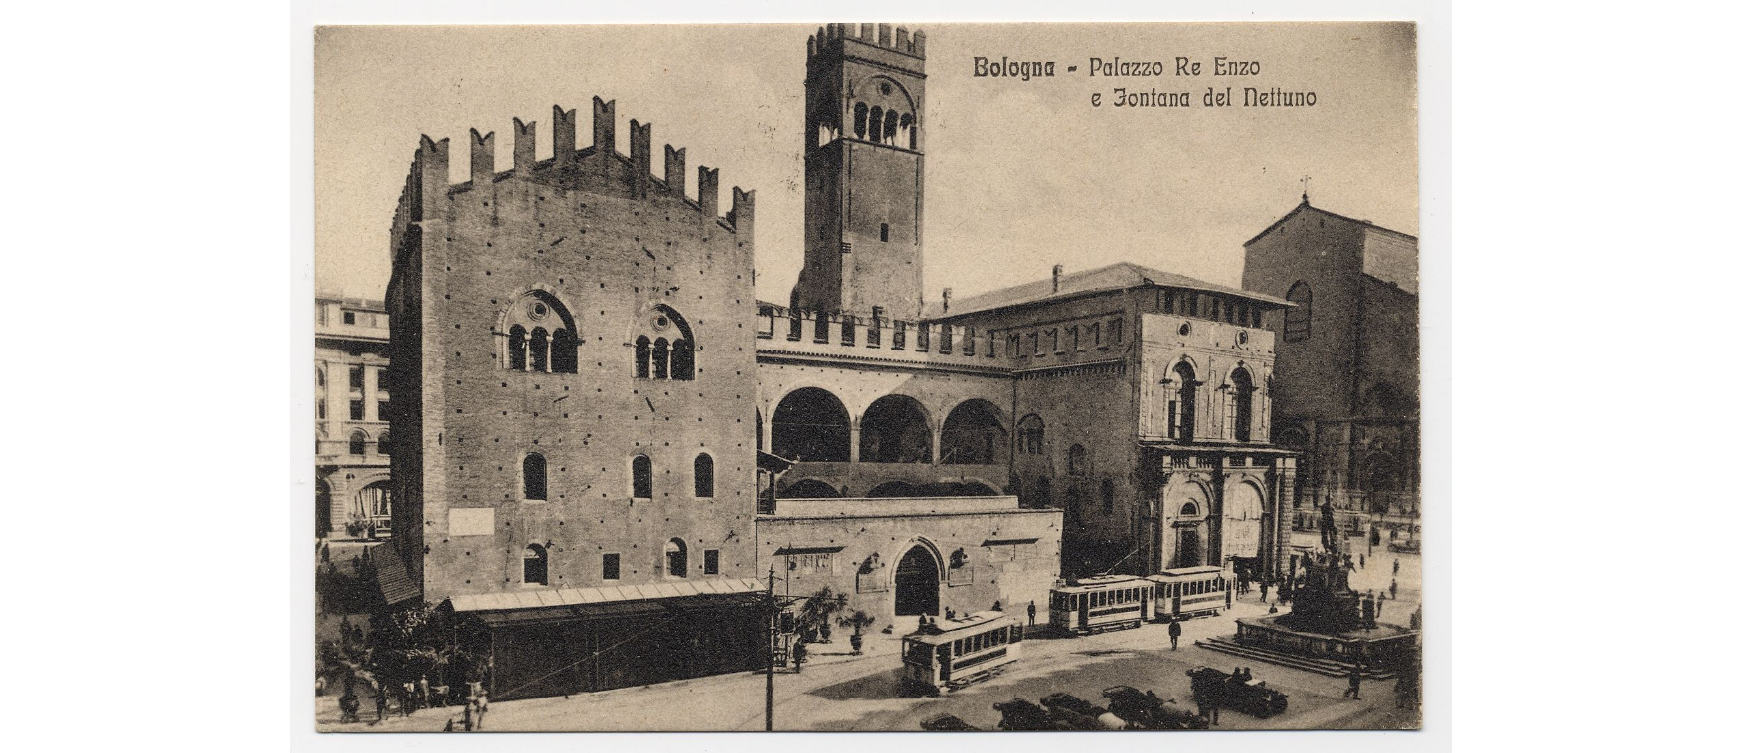 Fotografo non identificato, BOLOGNA-PALAZZO RE ENZO E Fontana DEL NETTUNO, 1930, cartolina, FFC021834